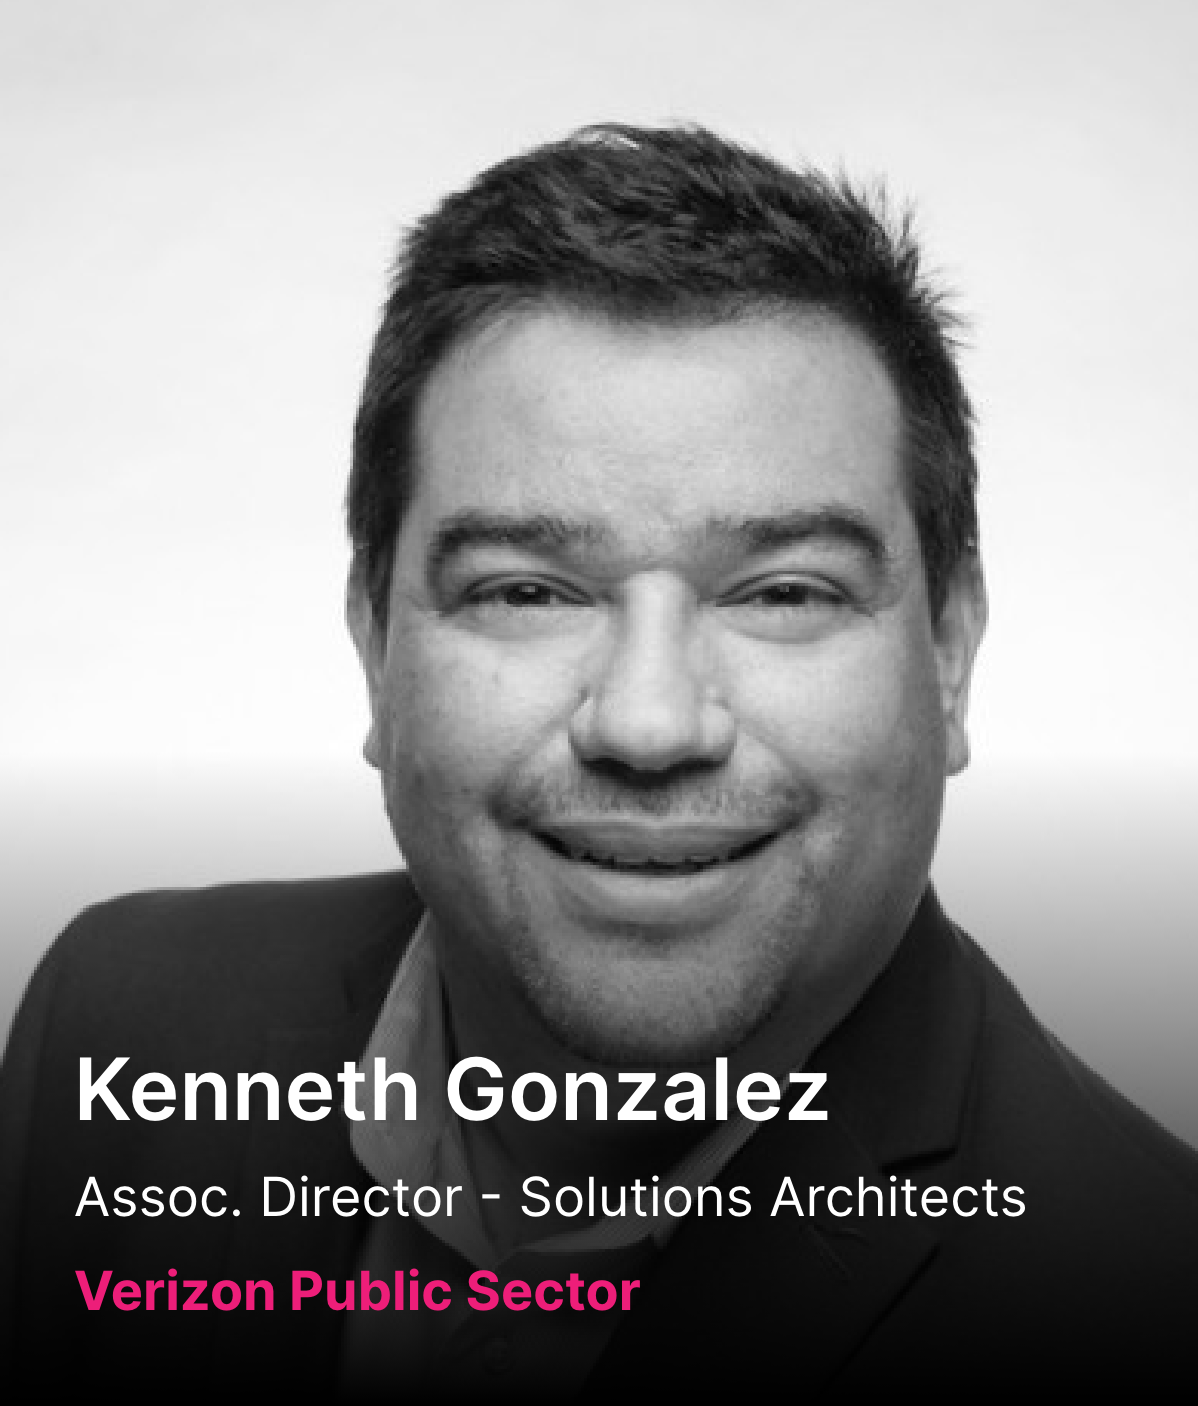 Kenneth Gonzalez